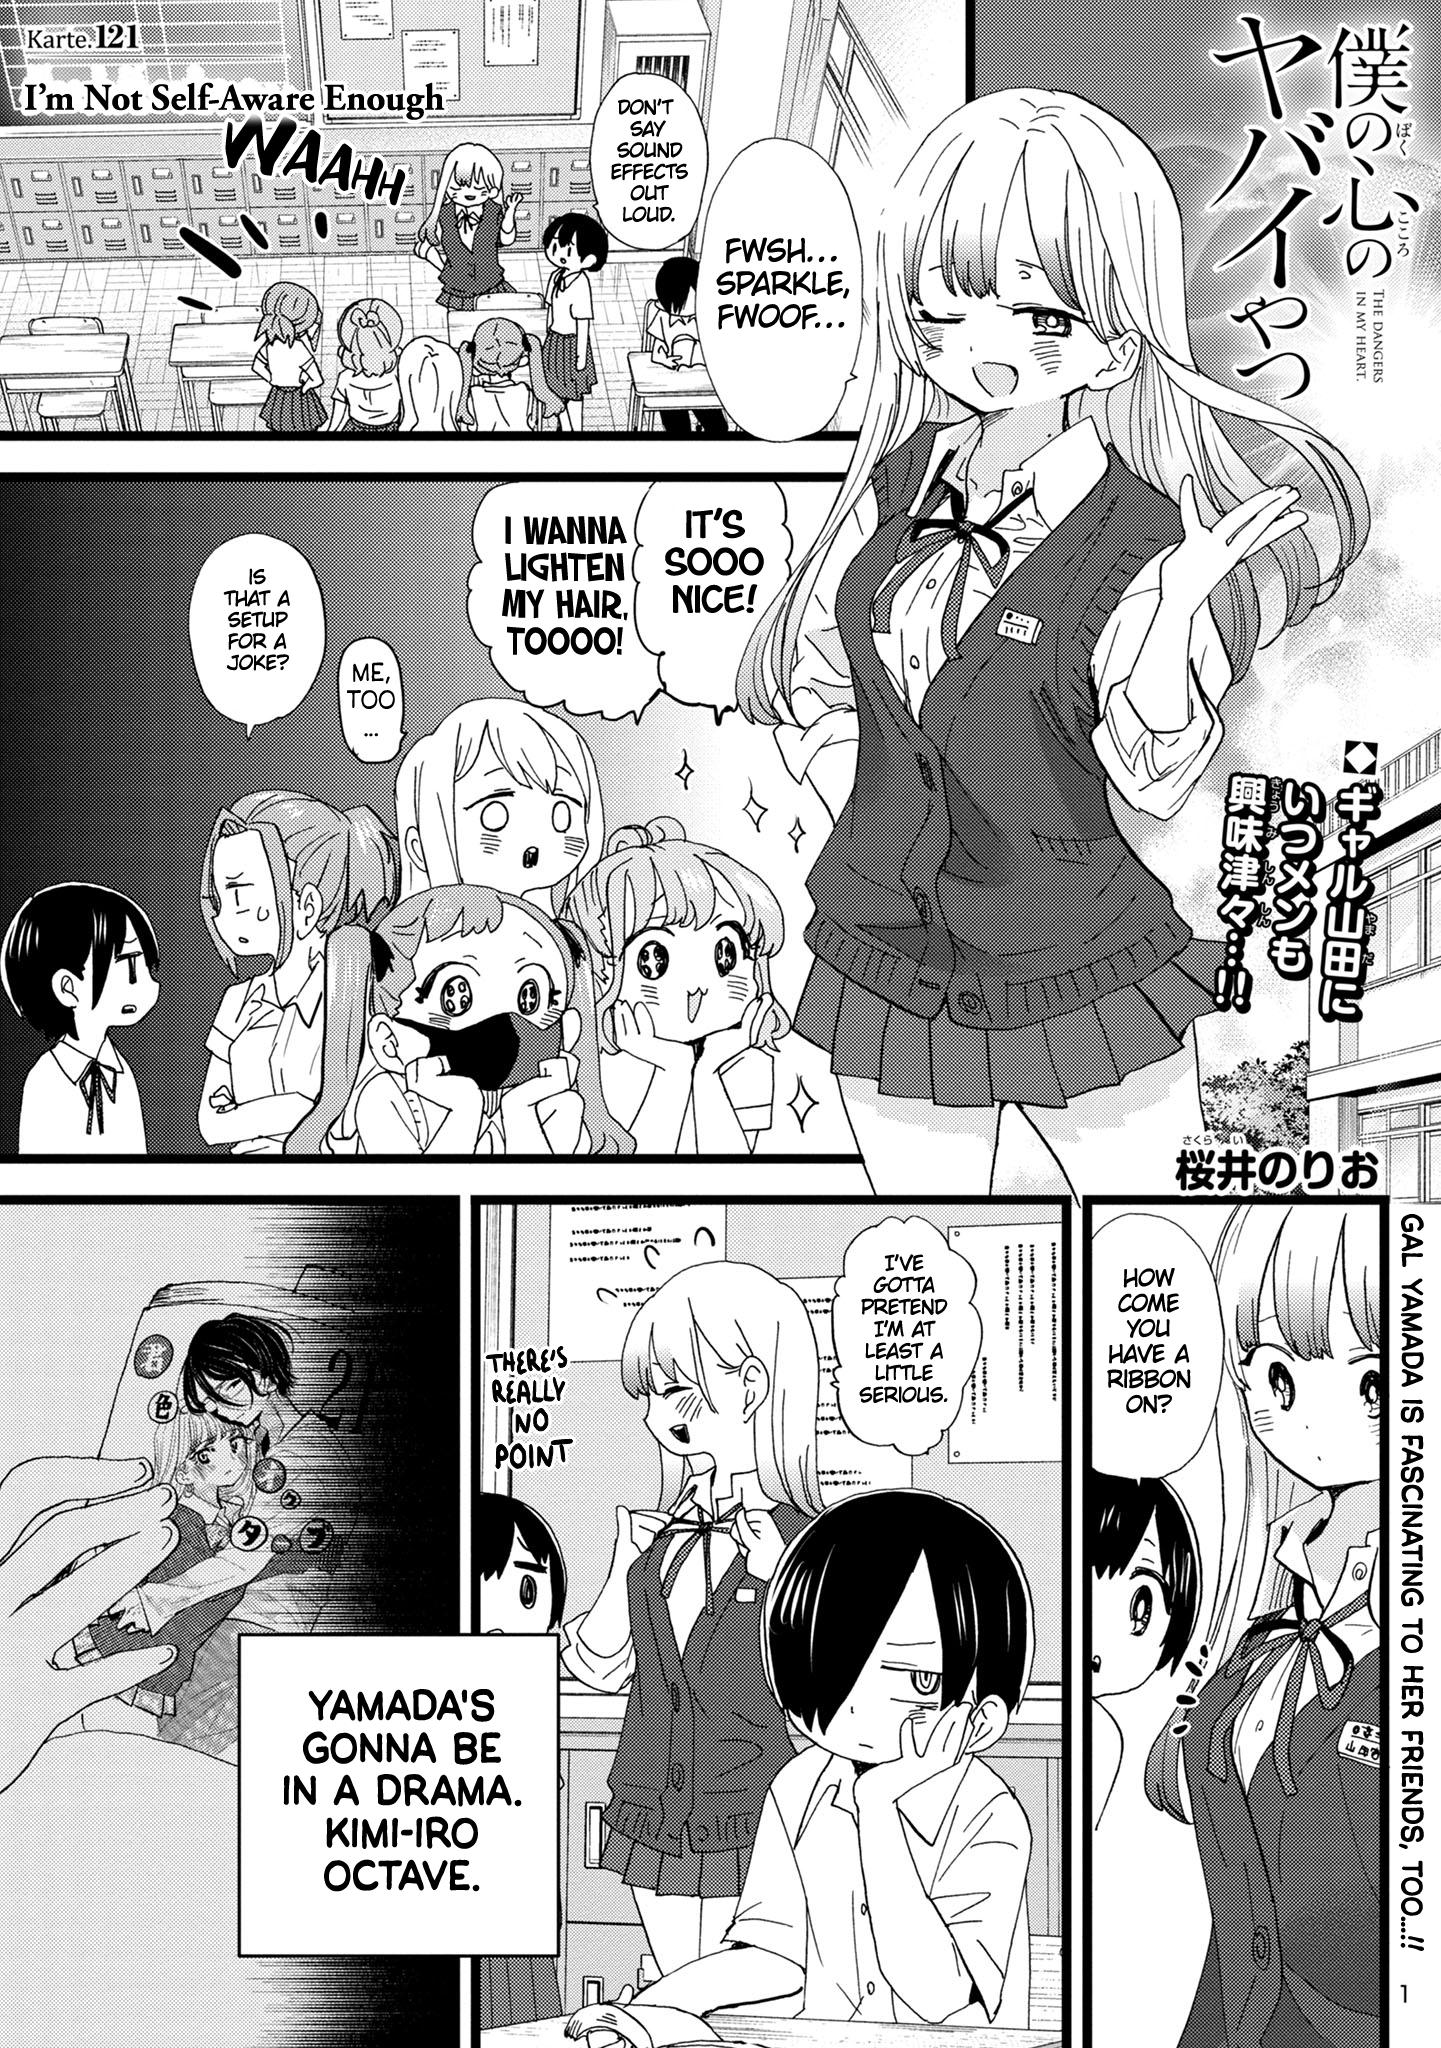 Boku no Kokoro no Yabai Yatsu Vol.7 Ch.89 Page 2 - Mangago